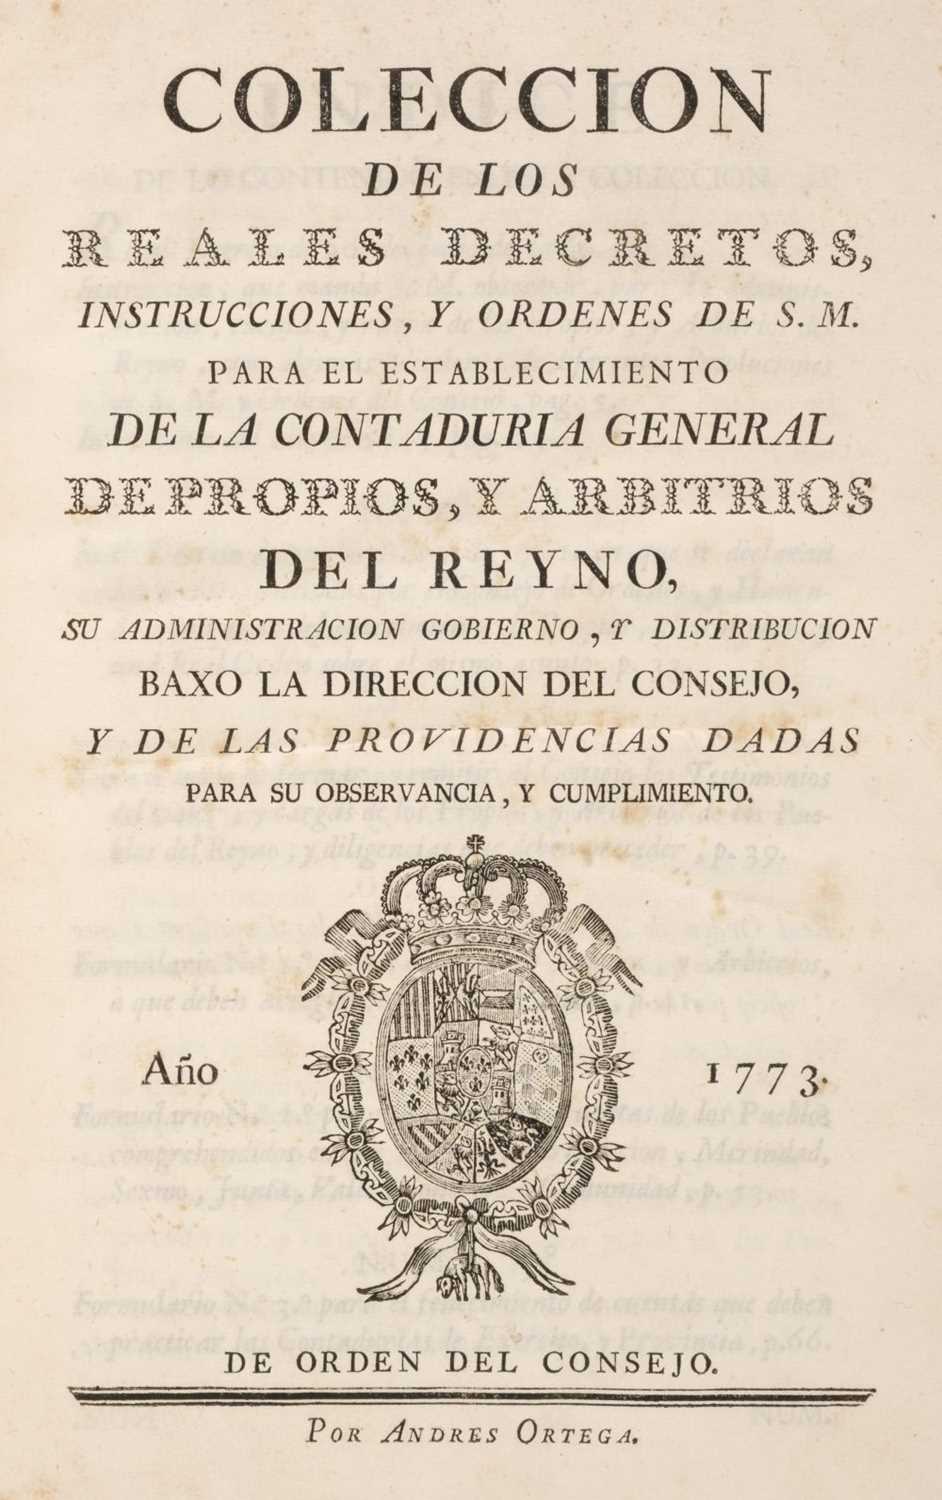 Lot 480 - Coleccion de los Reales Decretos, Instrucciones, y Ordenes, Madrid, 1773